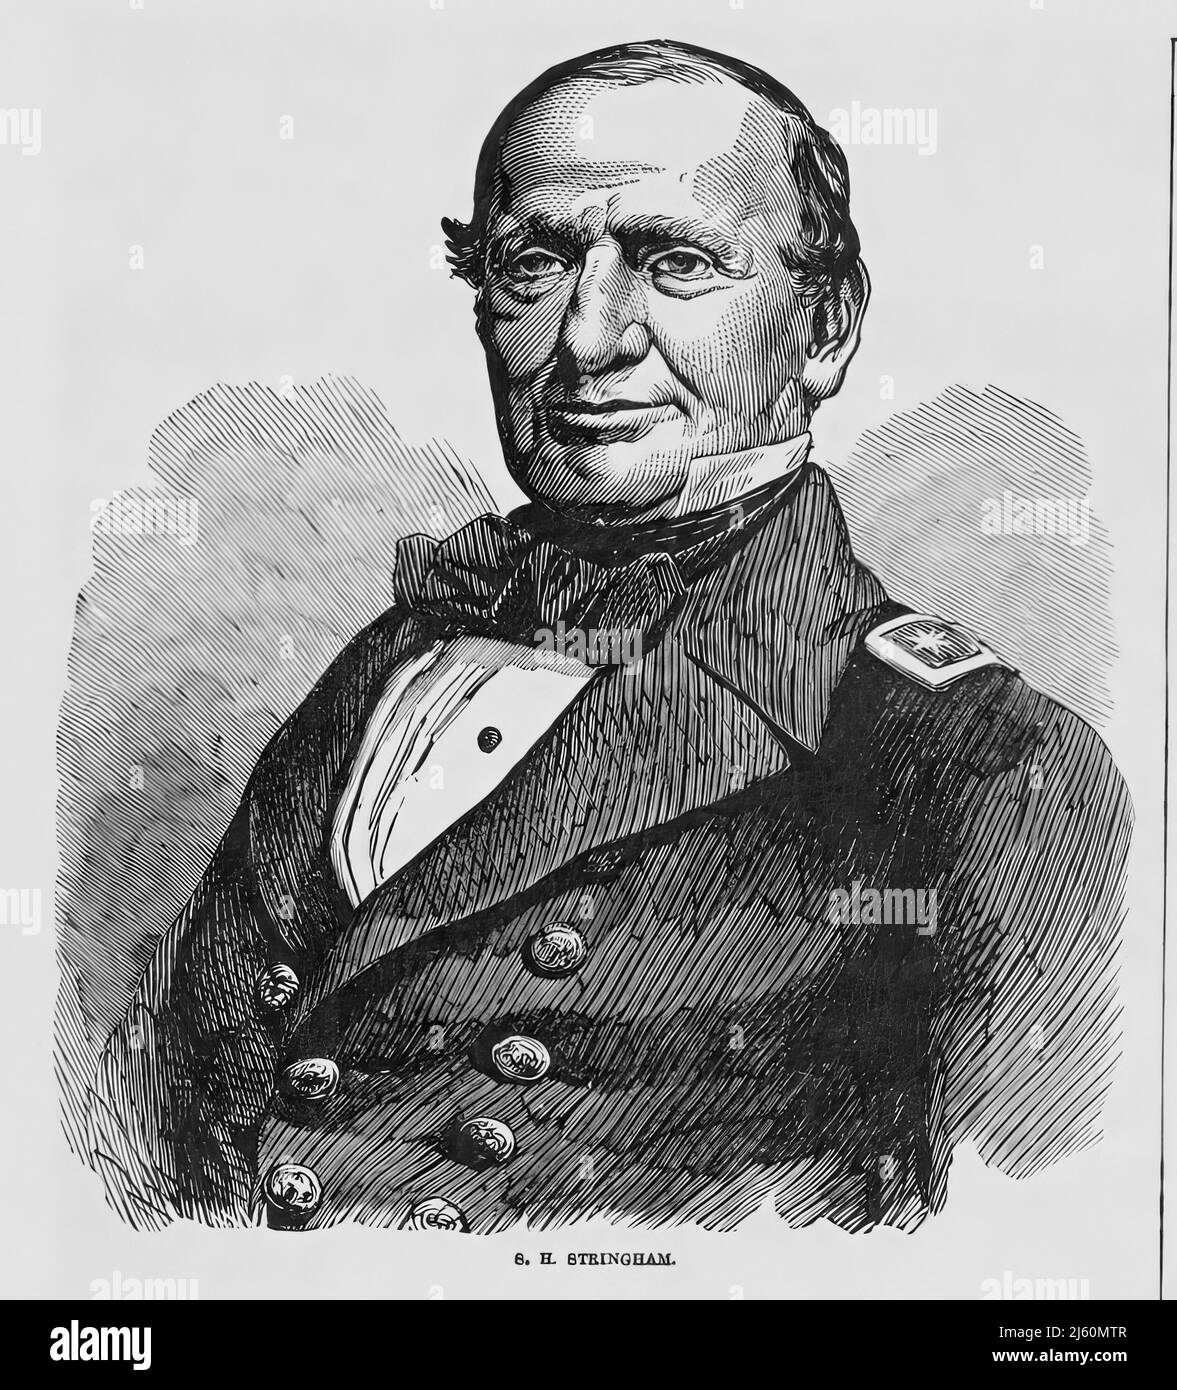 Portrait de Silas Horton Stringham, amiral de la marine de l'Union pendant la guerre de Sécession. illustration du siècle 19th Banque D'Images